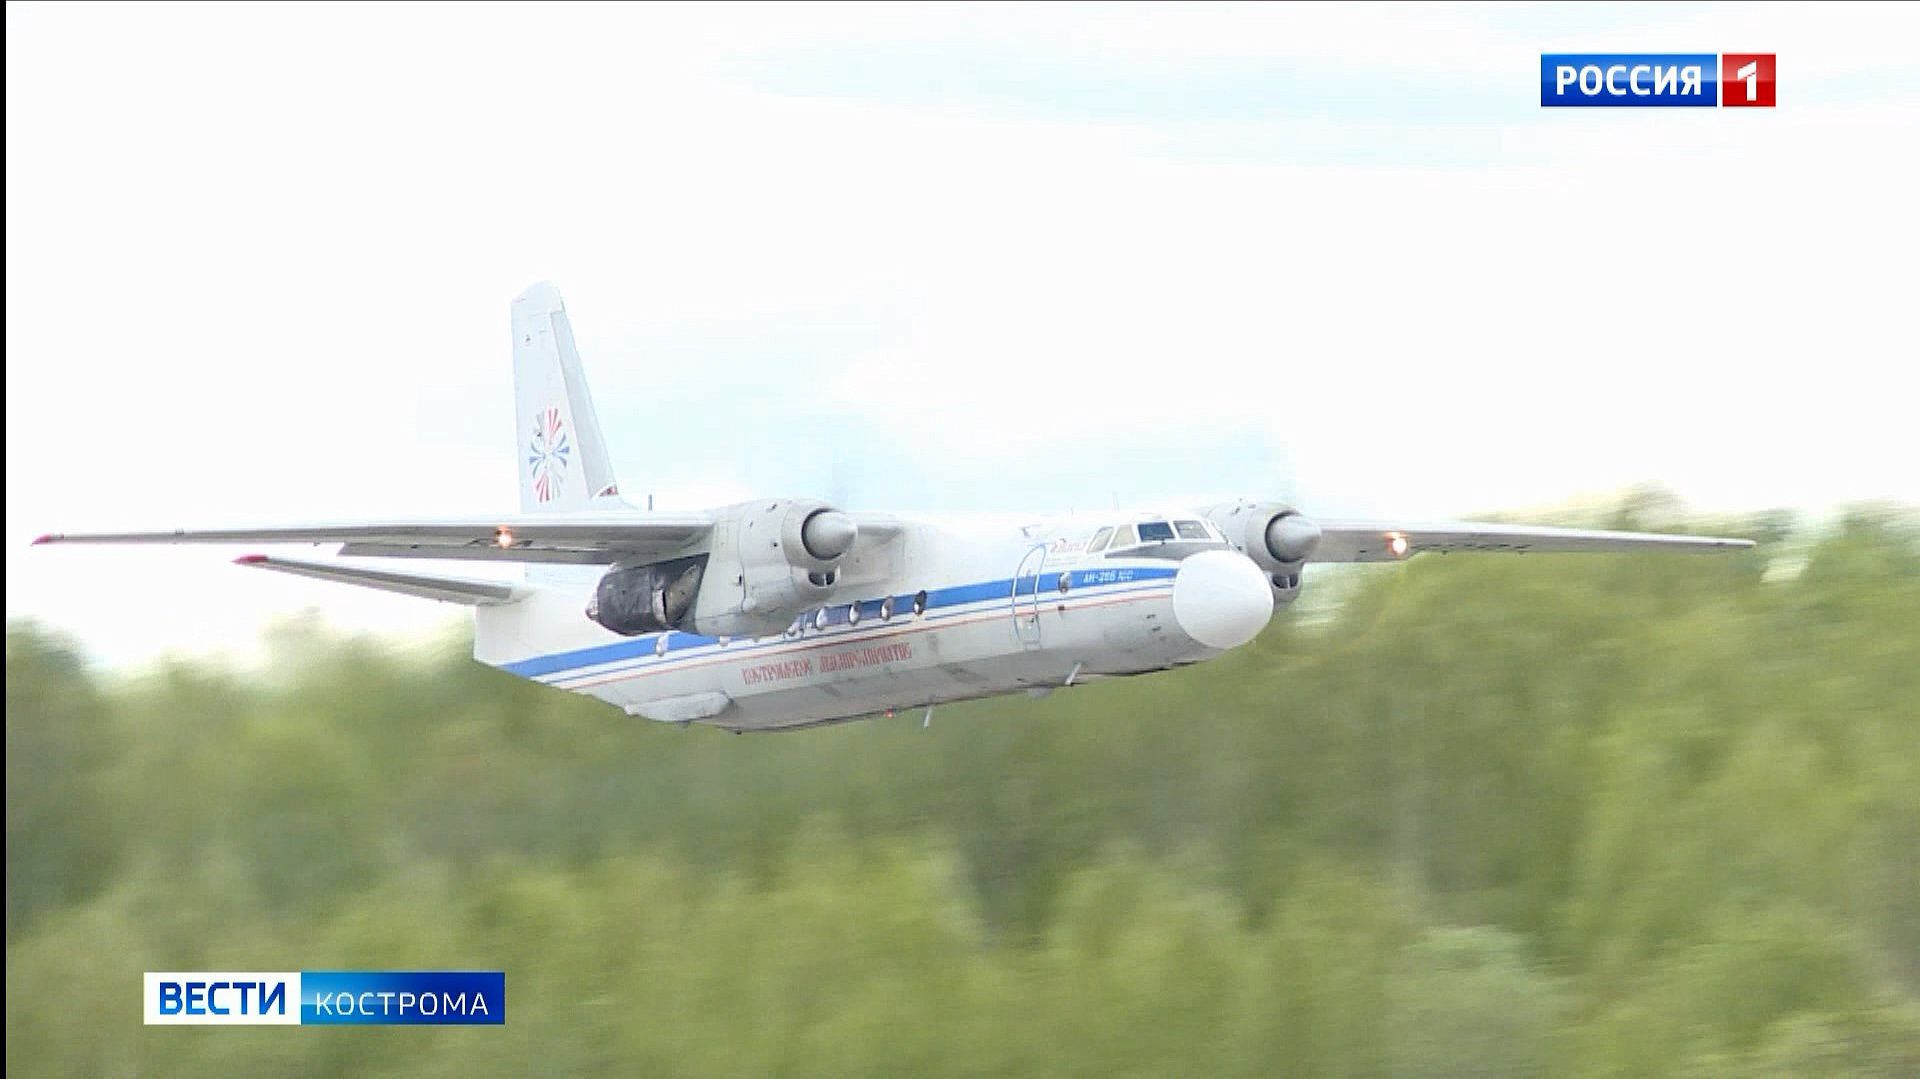 Костромское авиапредприятие строит планы на организацию полётов в Крым